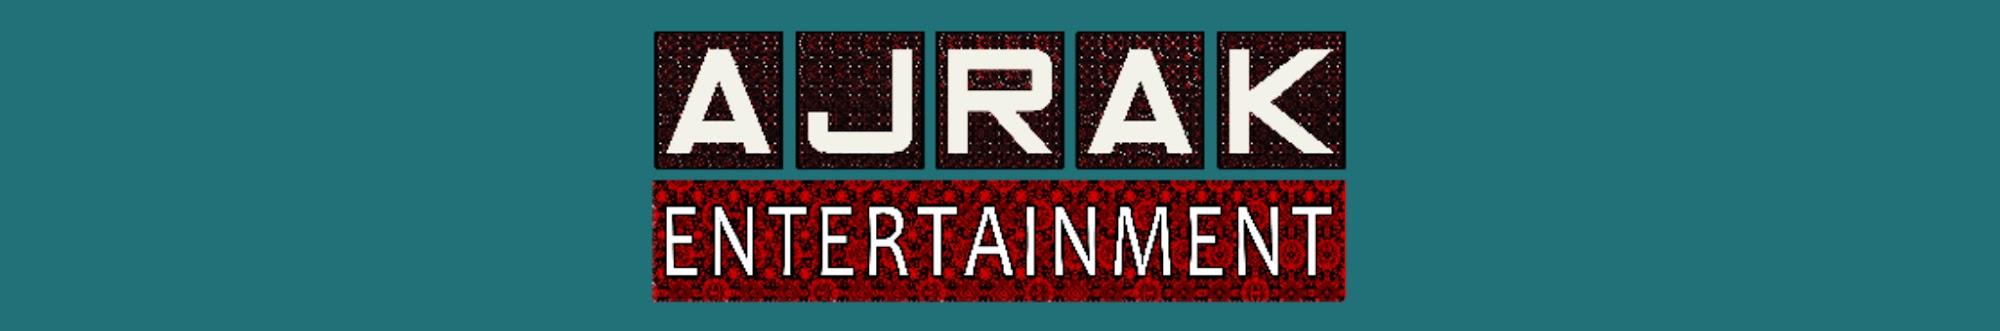 Ajrak Entertainment